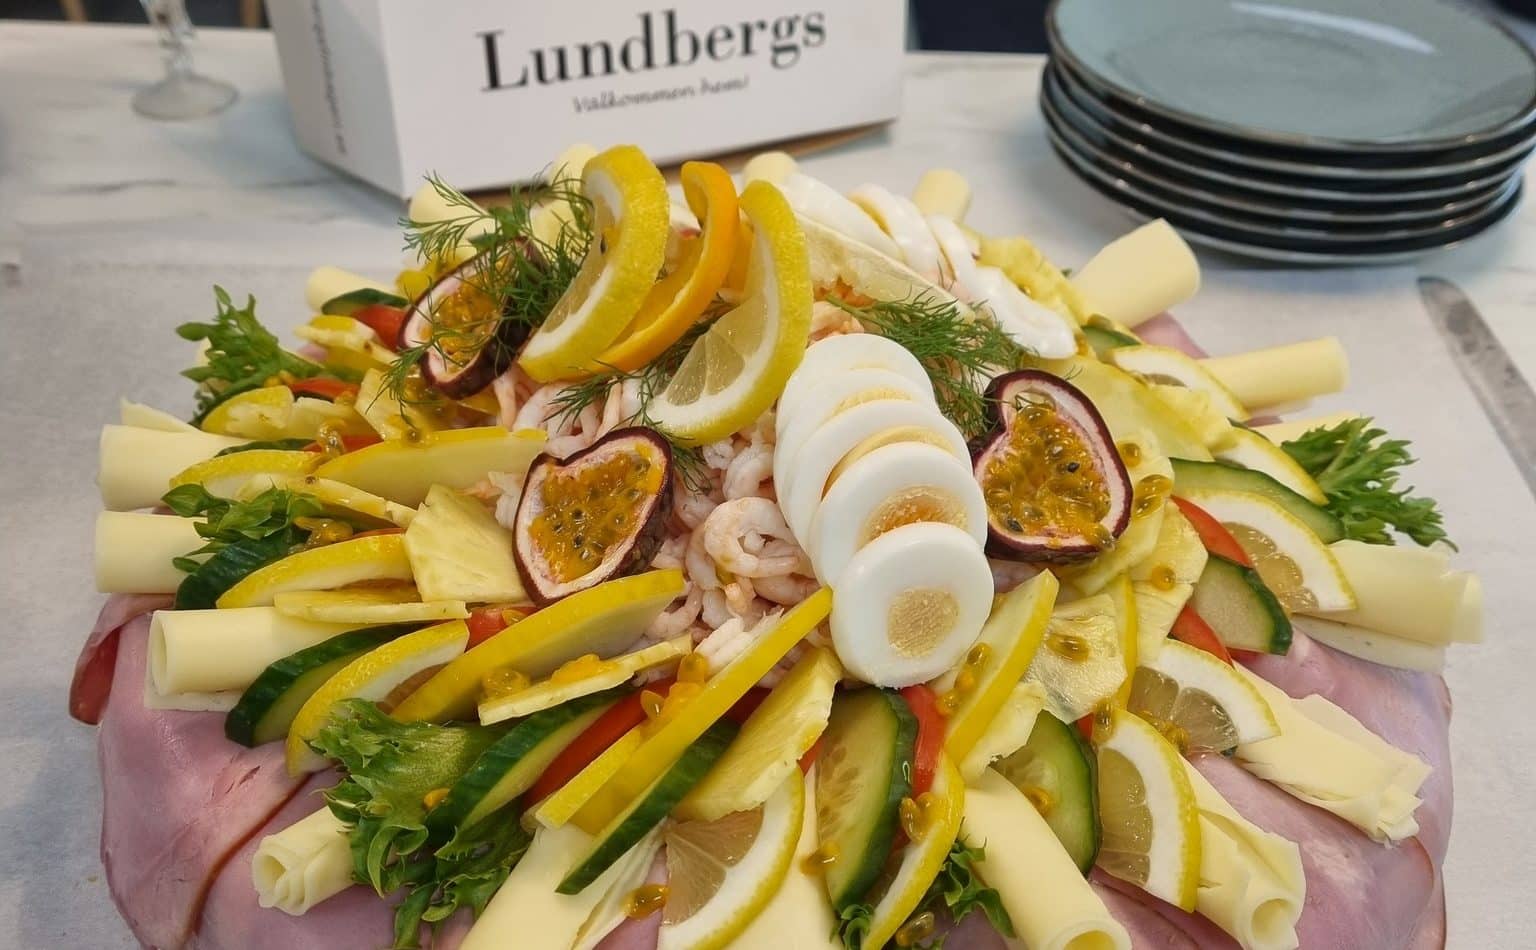 Smörgåstårta från Lundbergs finbageri.